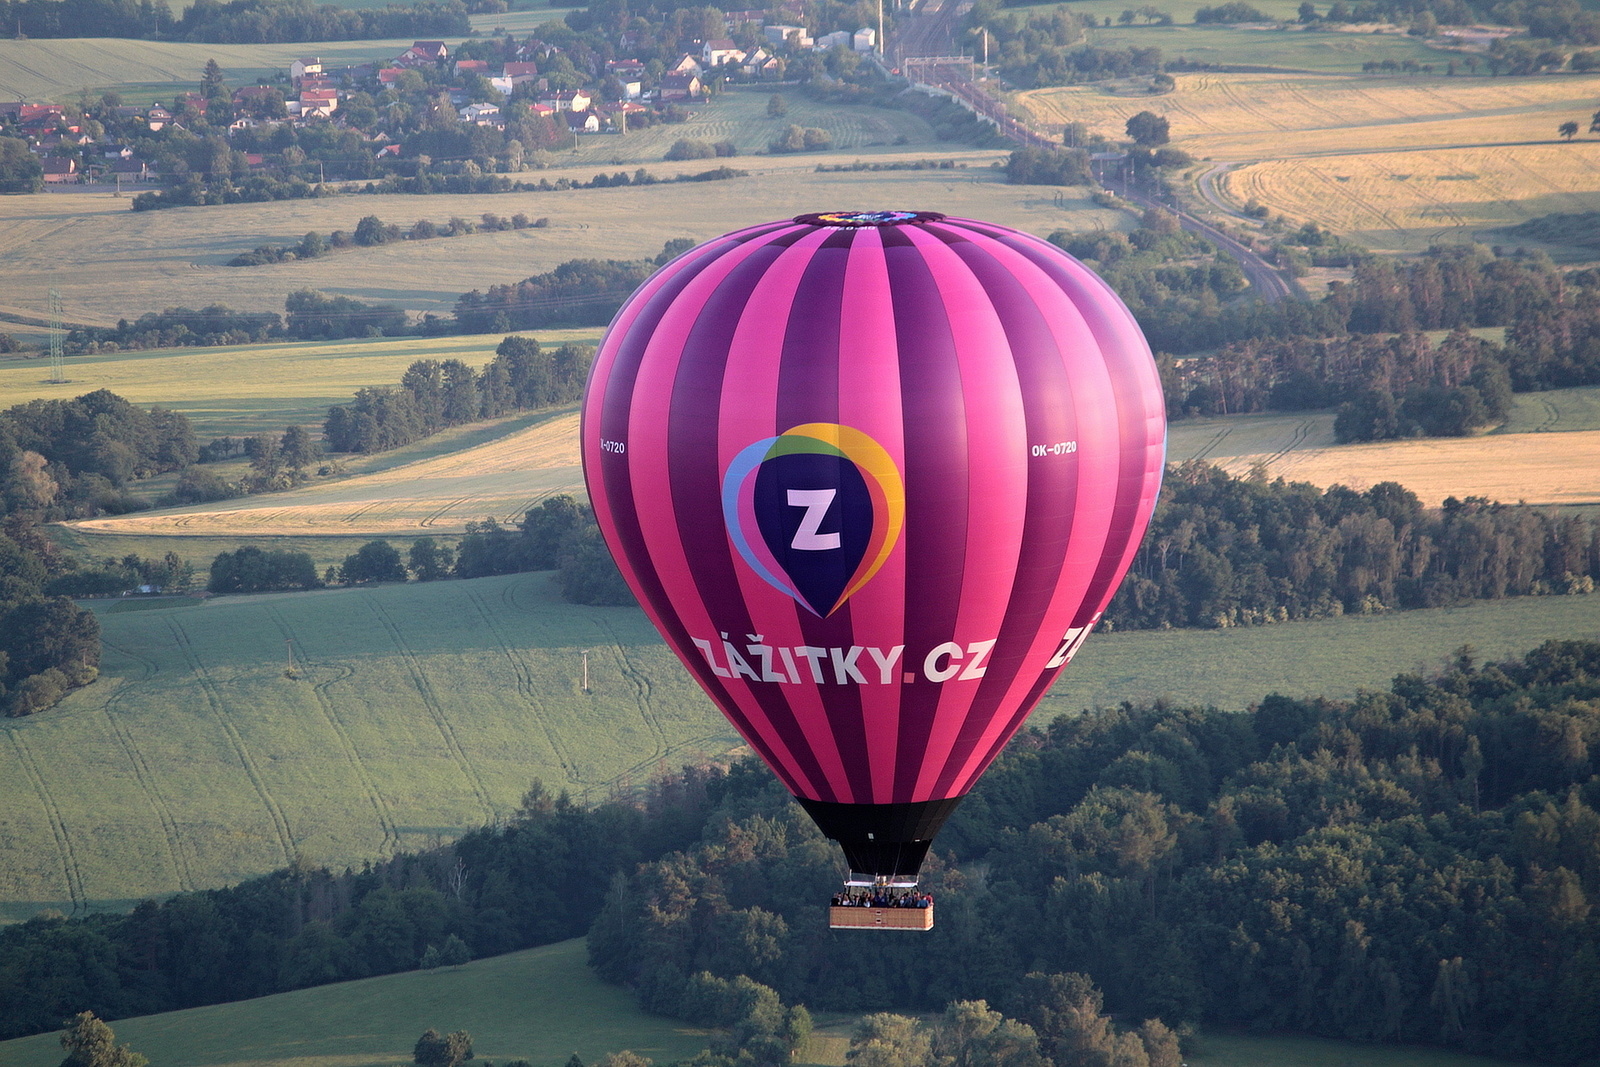 OBRAZEM: Největší balón ve střední Evropě premiérově odstartoval z Nesvačil  - Kolínský deník